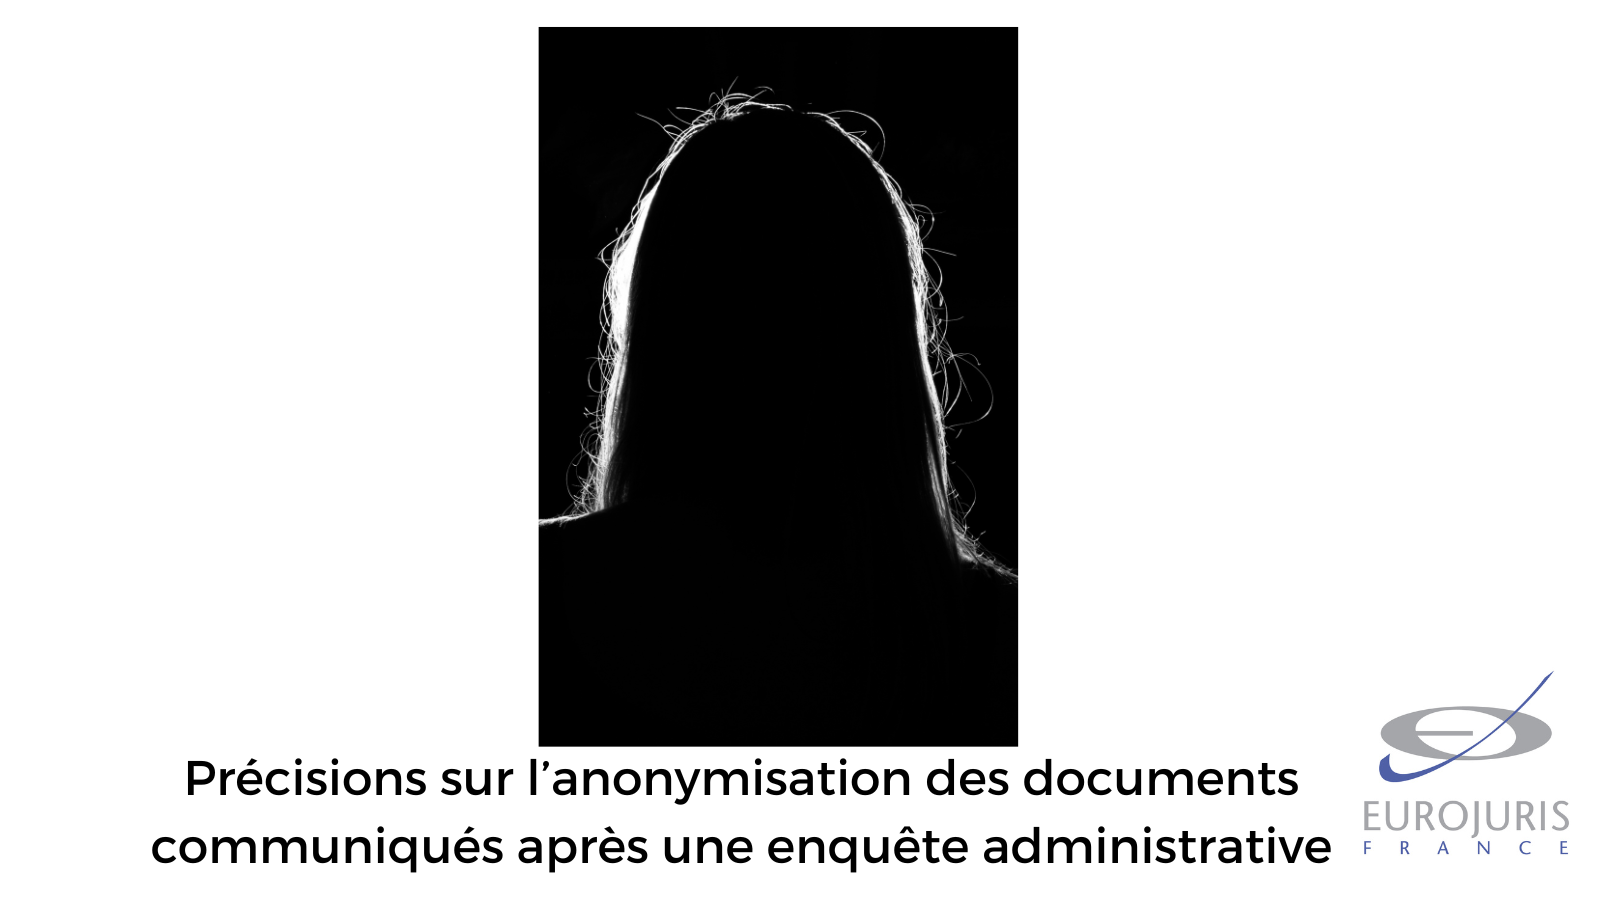 Précisions sur l’anonymisation des documents communiqués après une enquête administrative